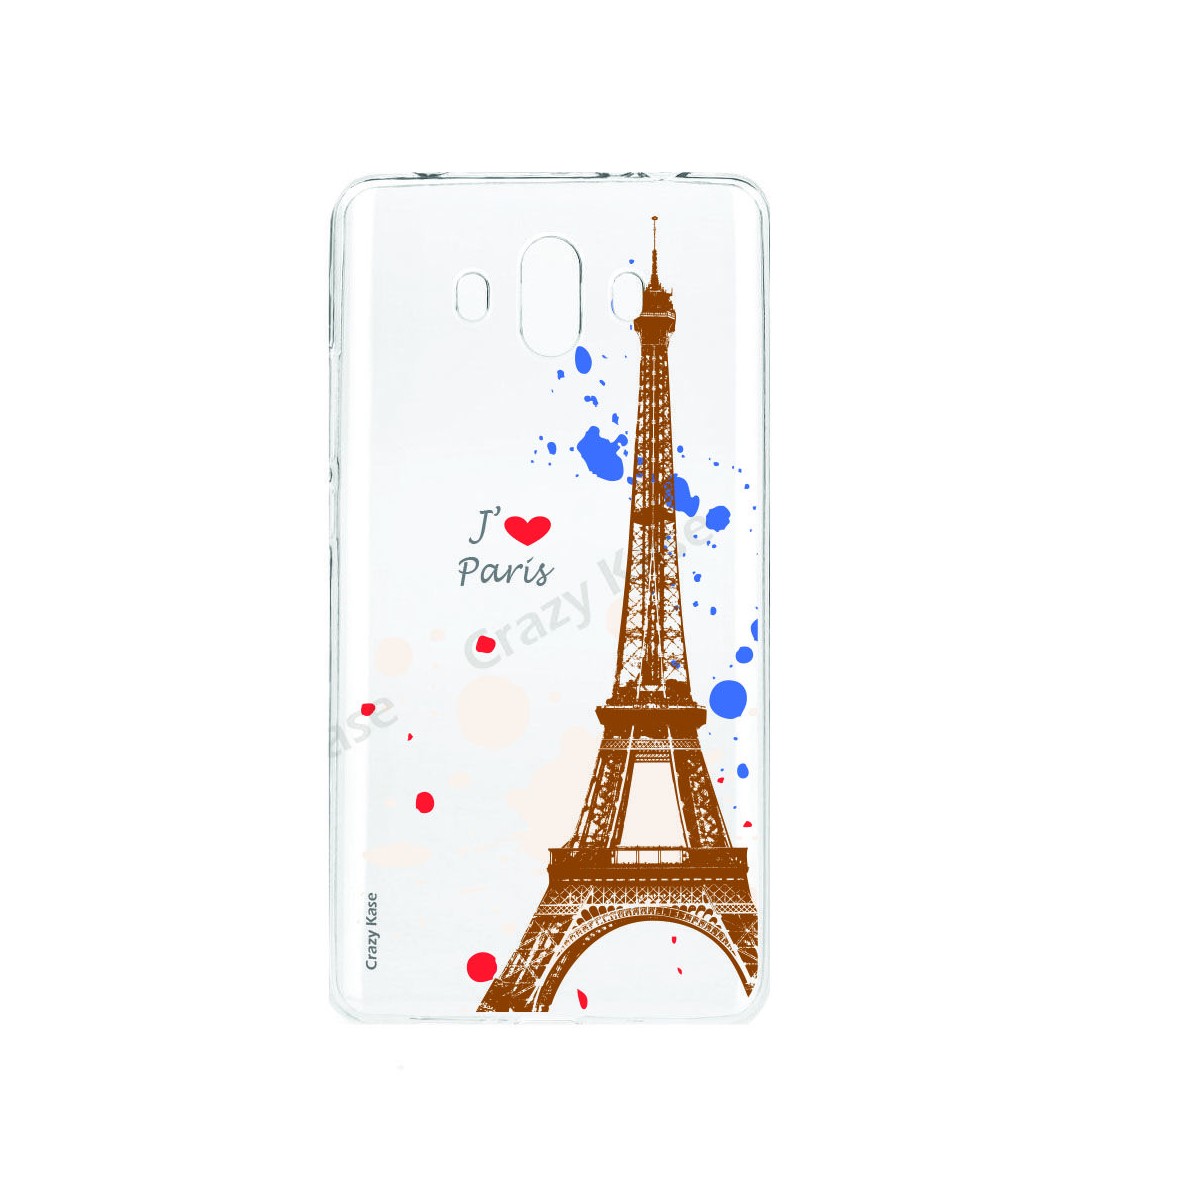 Coque compatible Huawei Mate 10 souple Paris- Crazy Kase